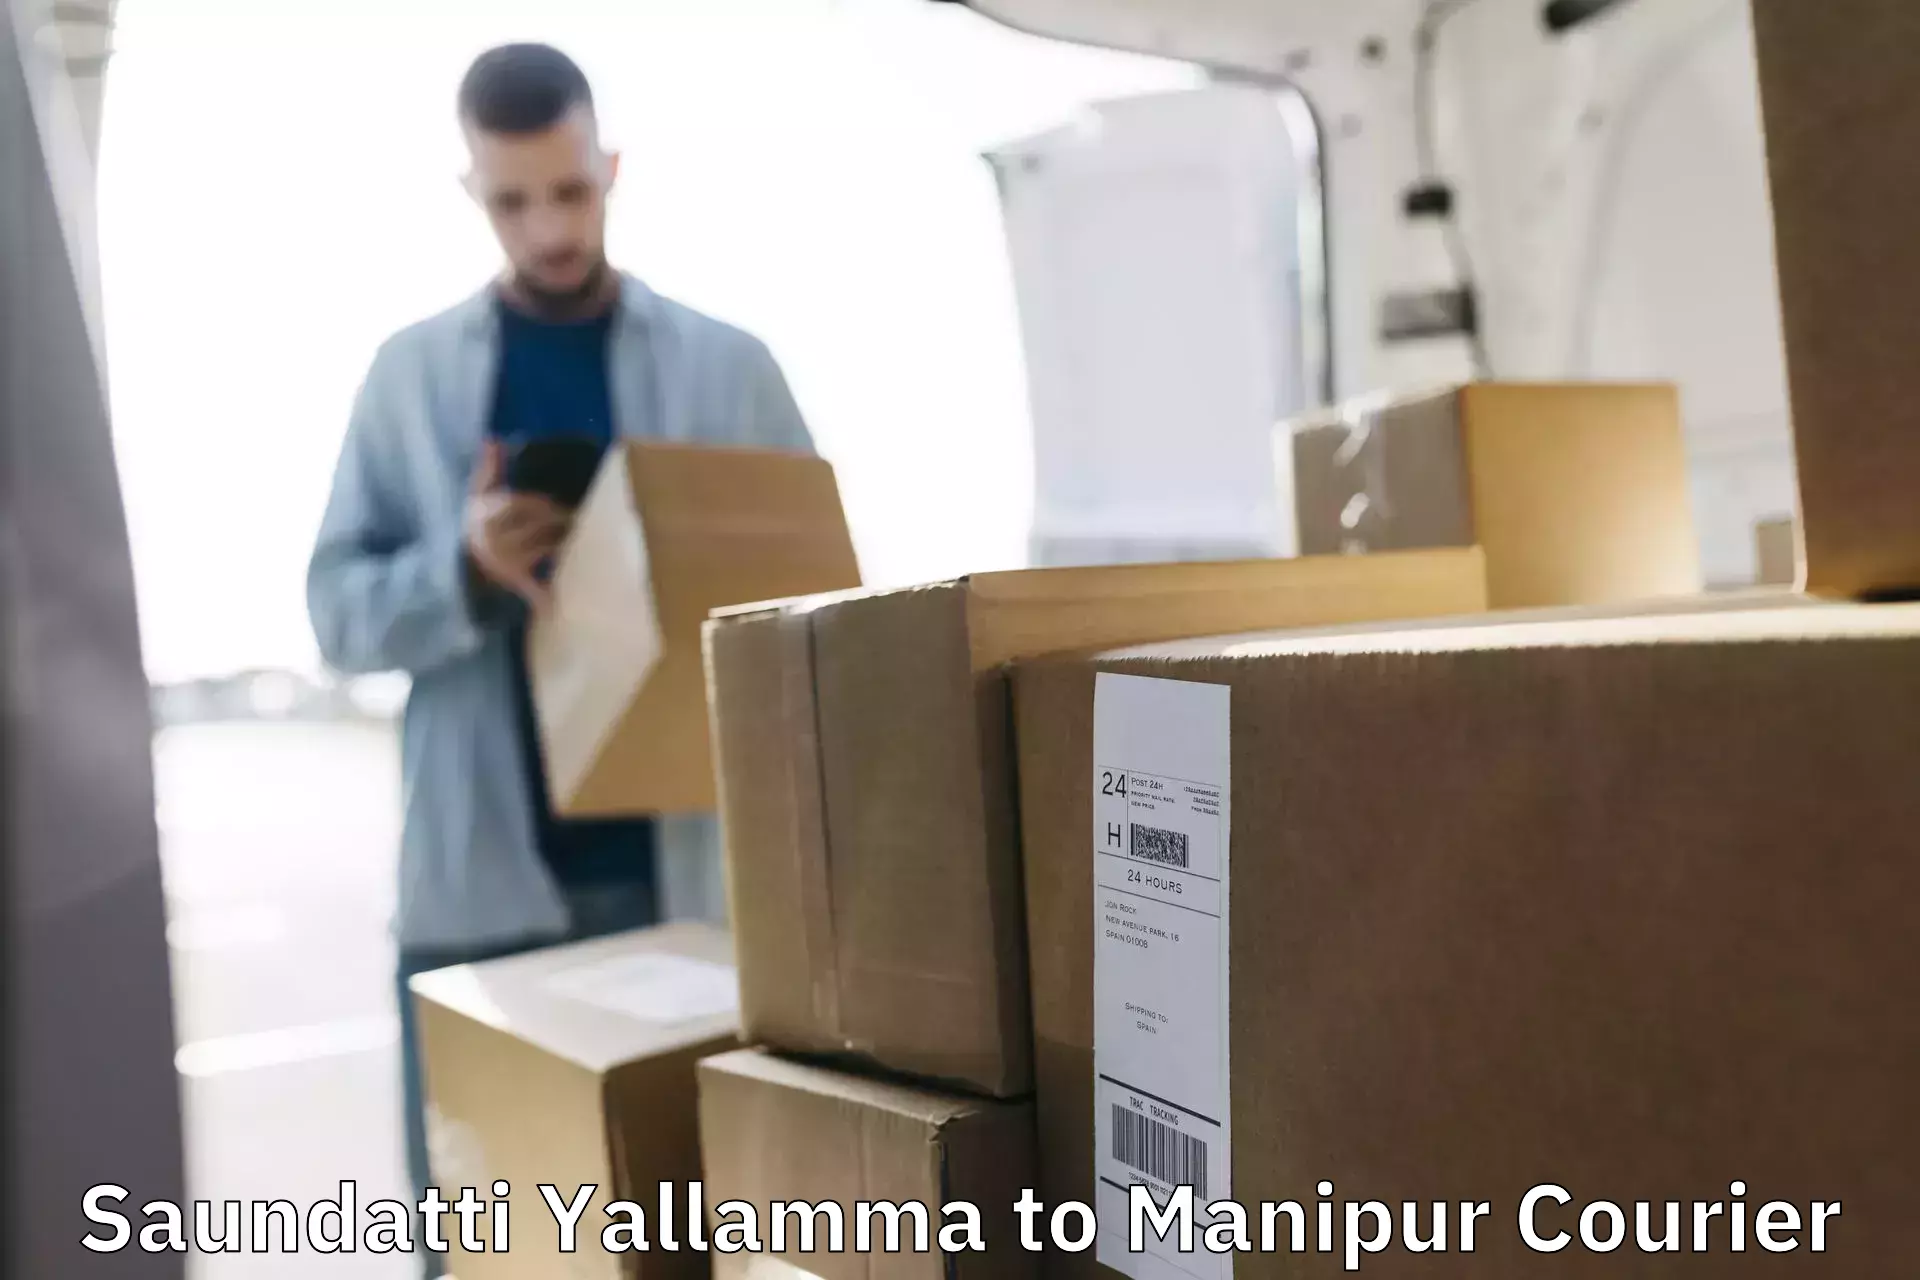 Secure package delivery Saundatti Yallamma to Senapati